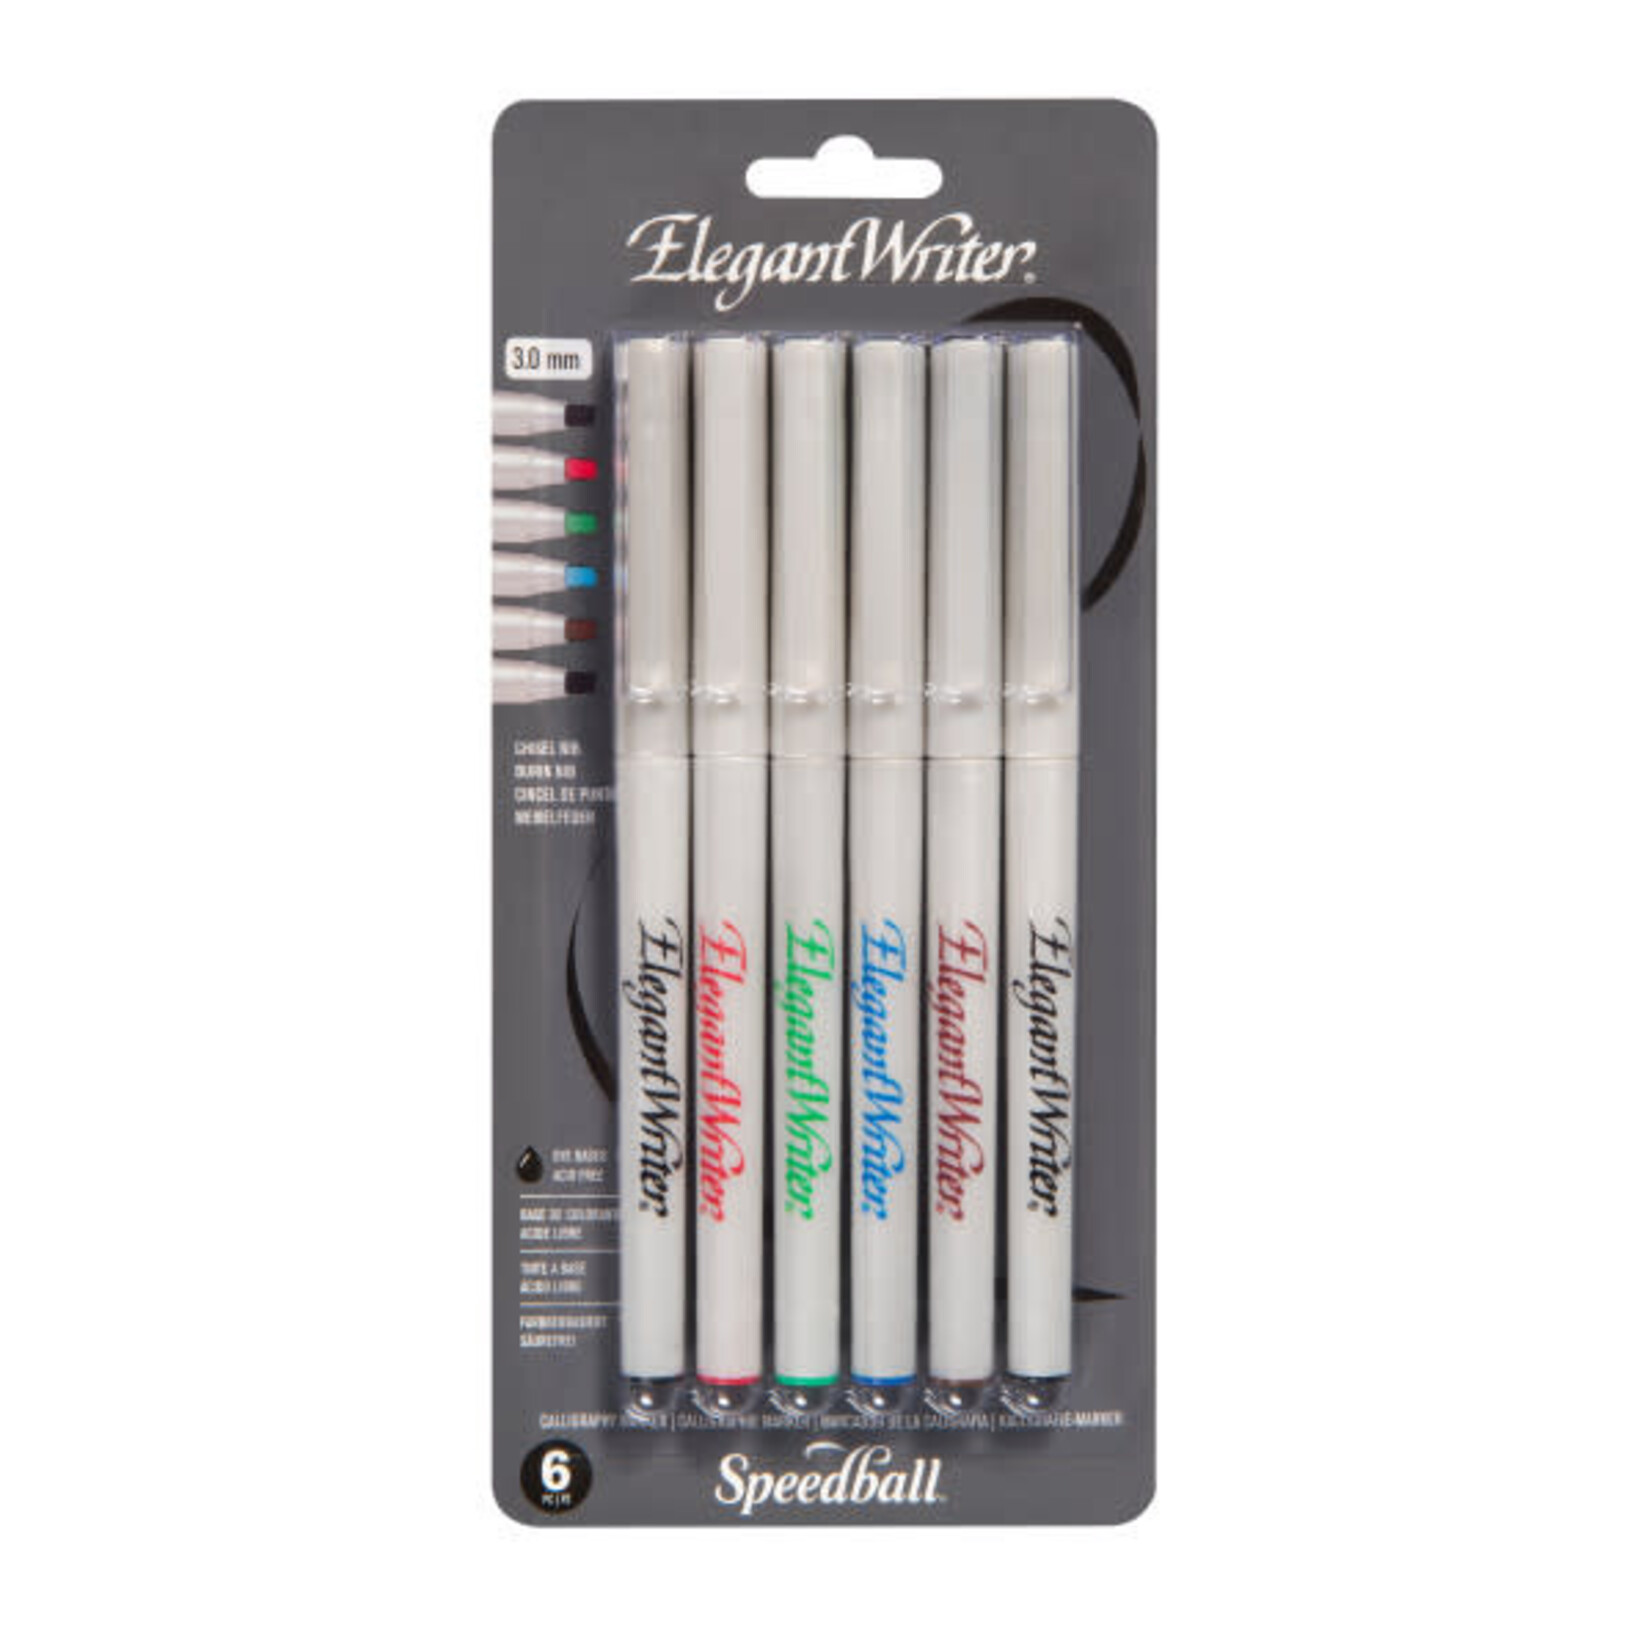 Elegant Writer Elegant Writer Calligraphy Pens, Marker Sets, 6-Color Medium-Point Set